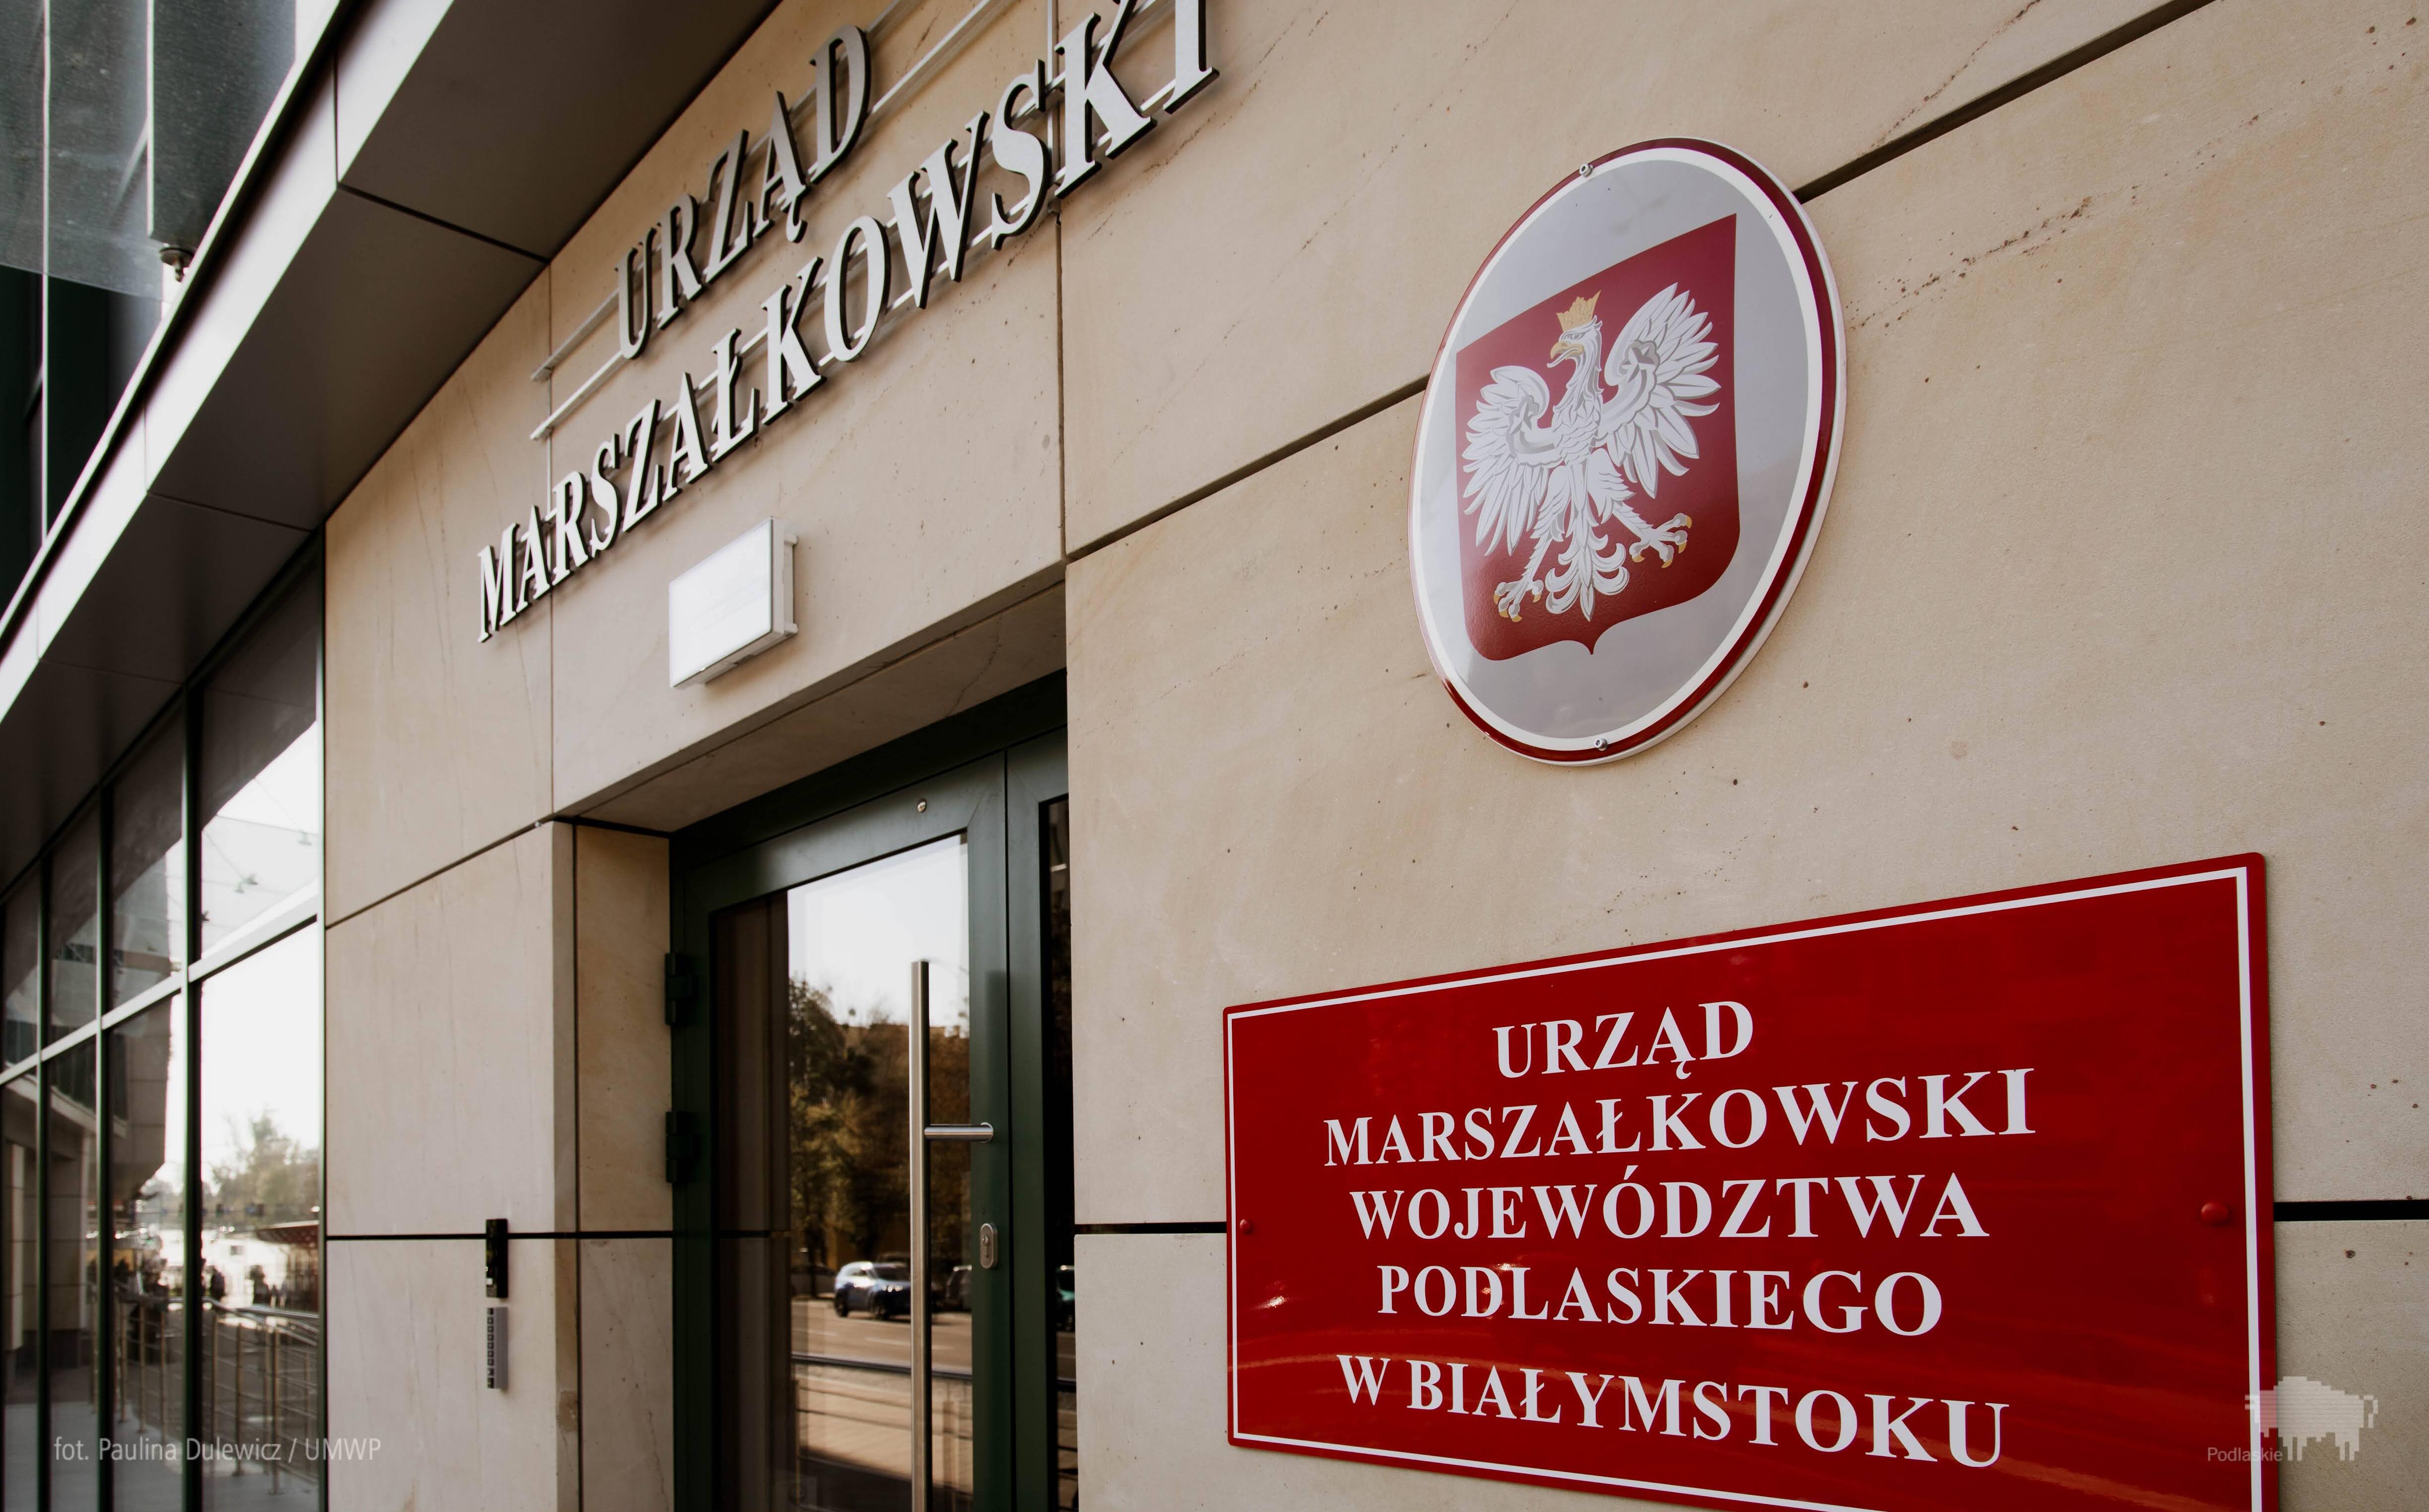 Wejście do urzędu marszałkowskiego